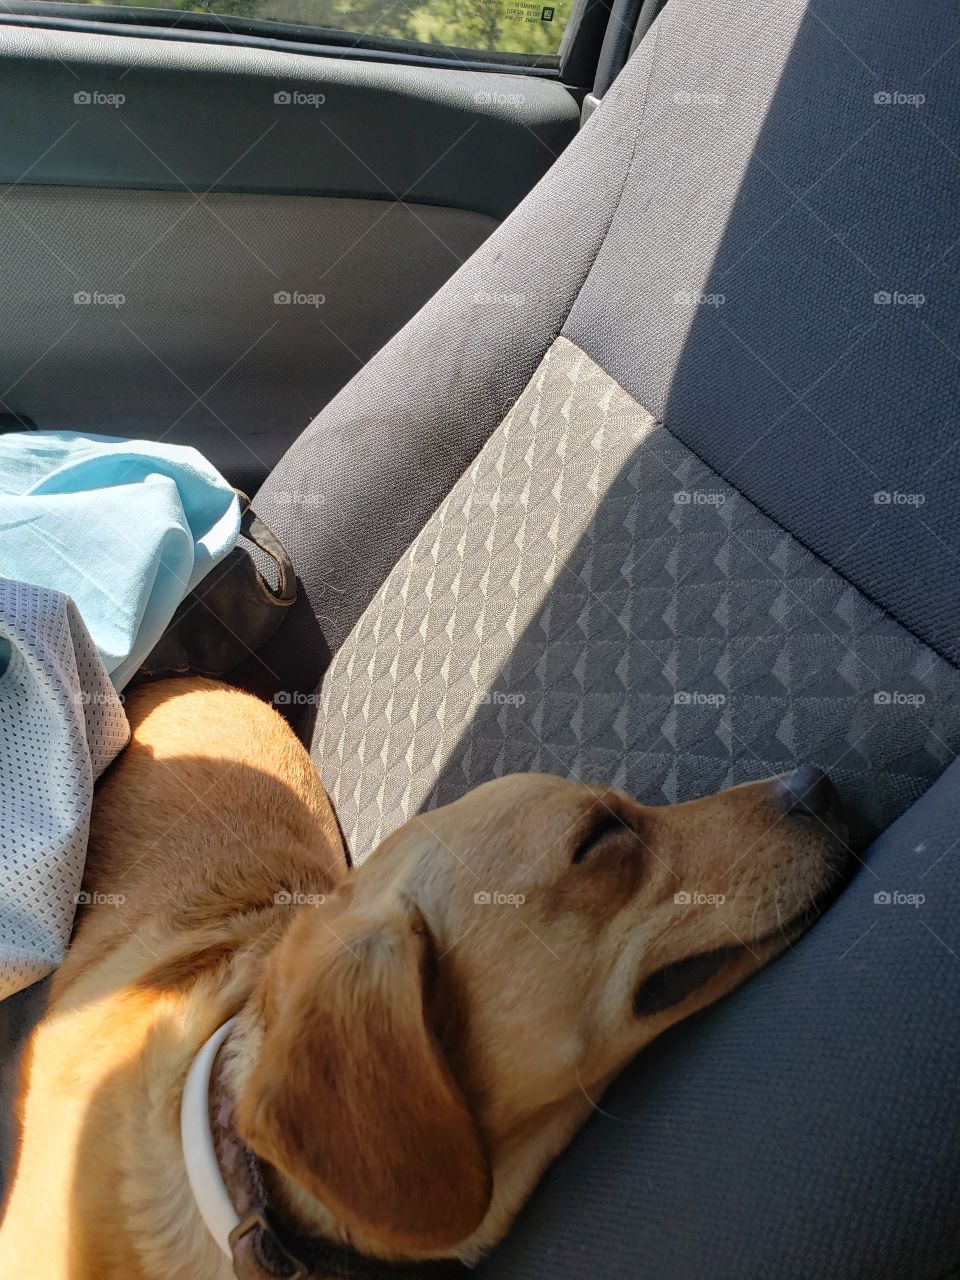 sleepy dog on a road trip